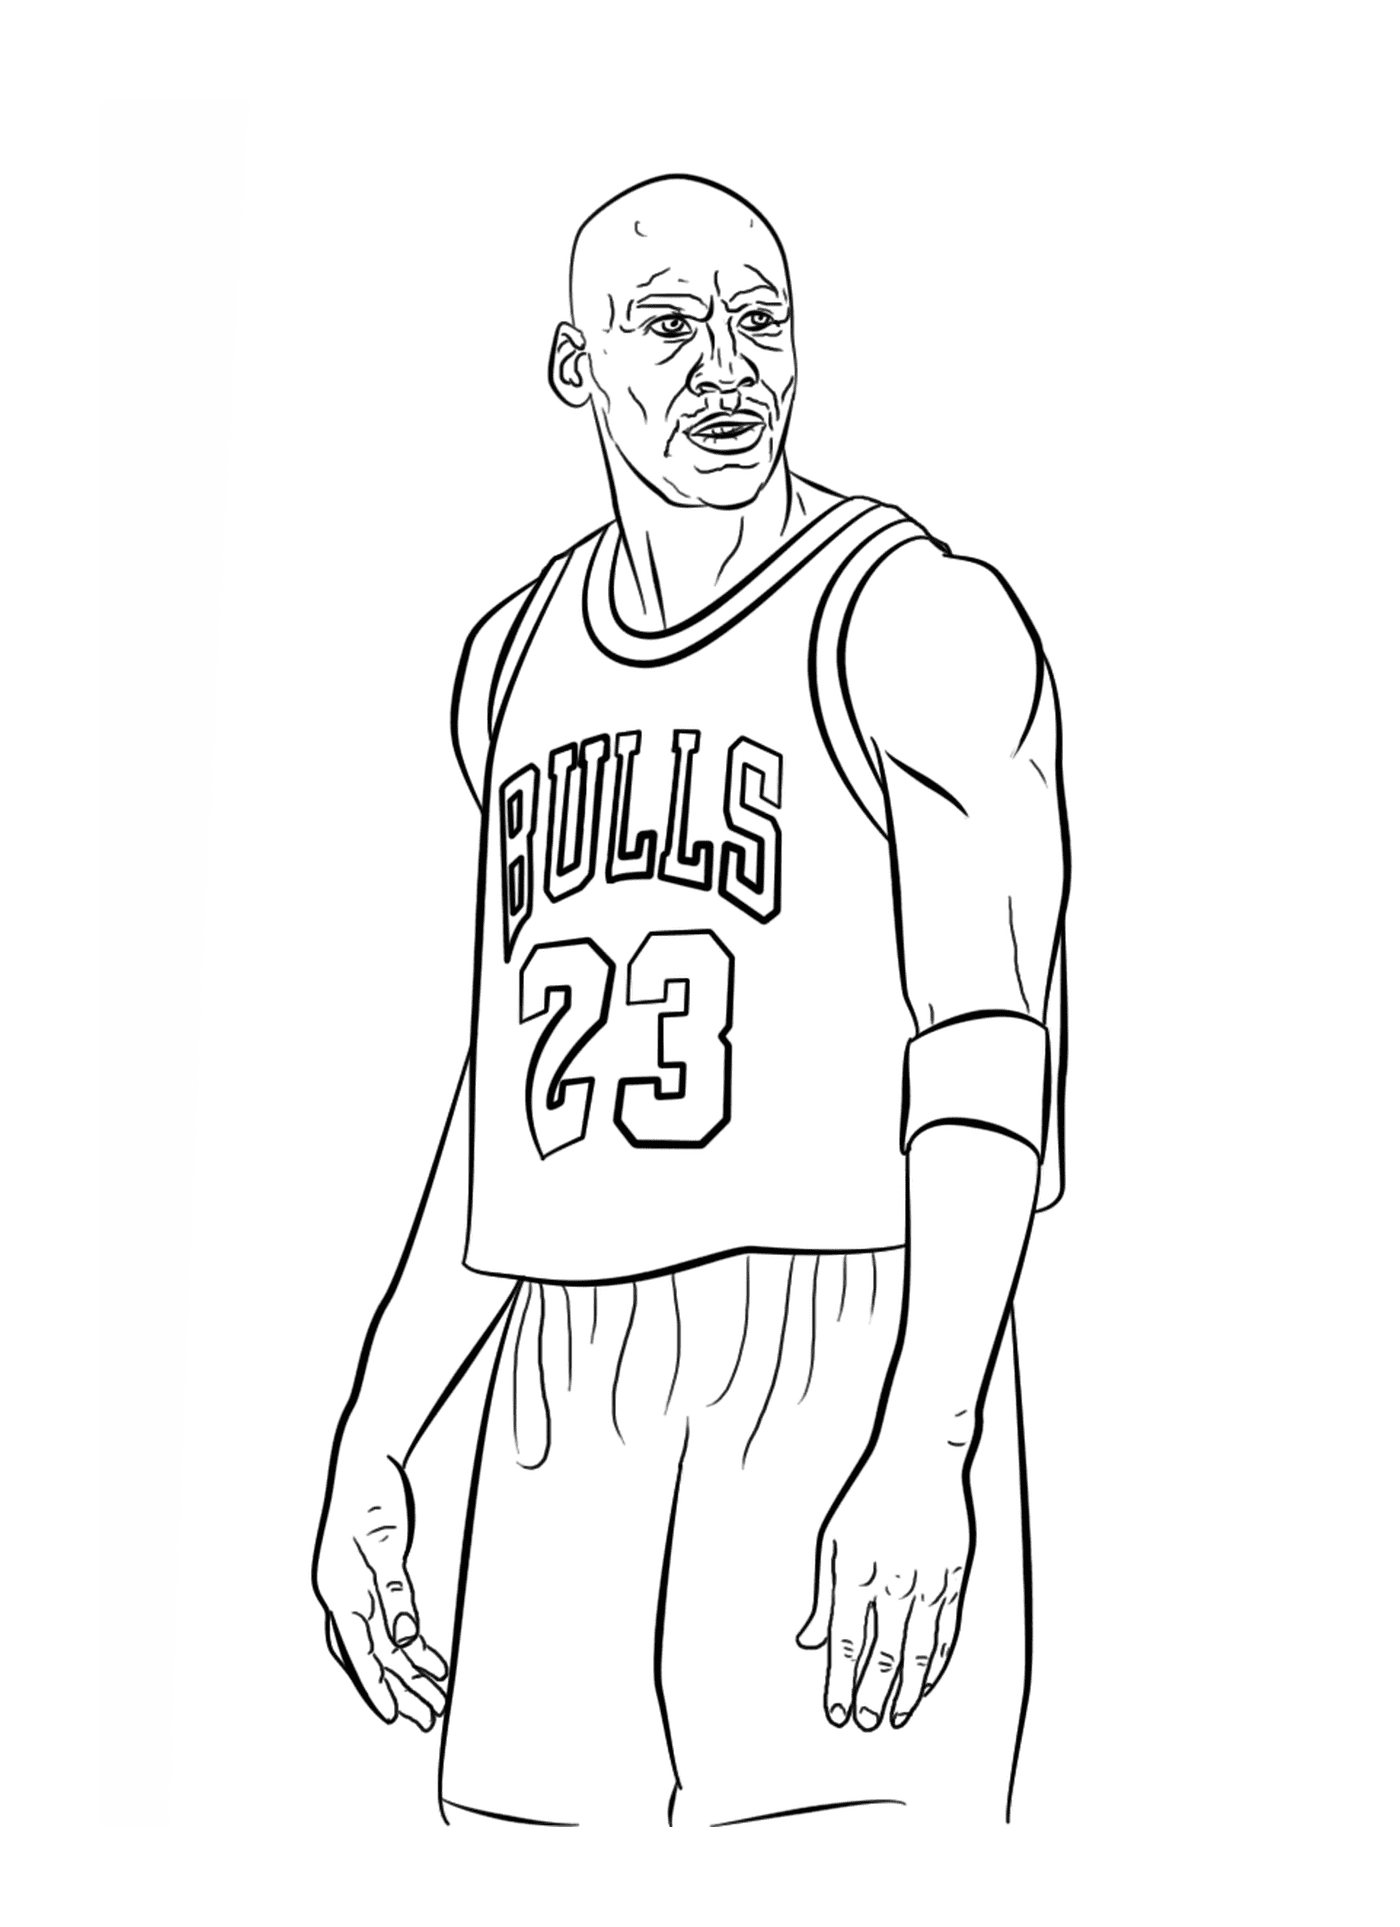  Майкл Джордан, баскетболист НБА 